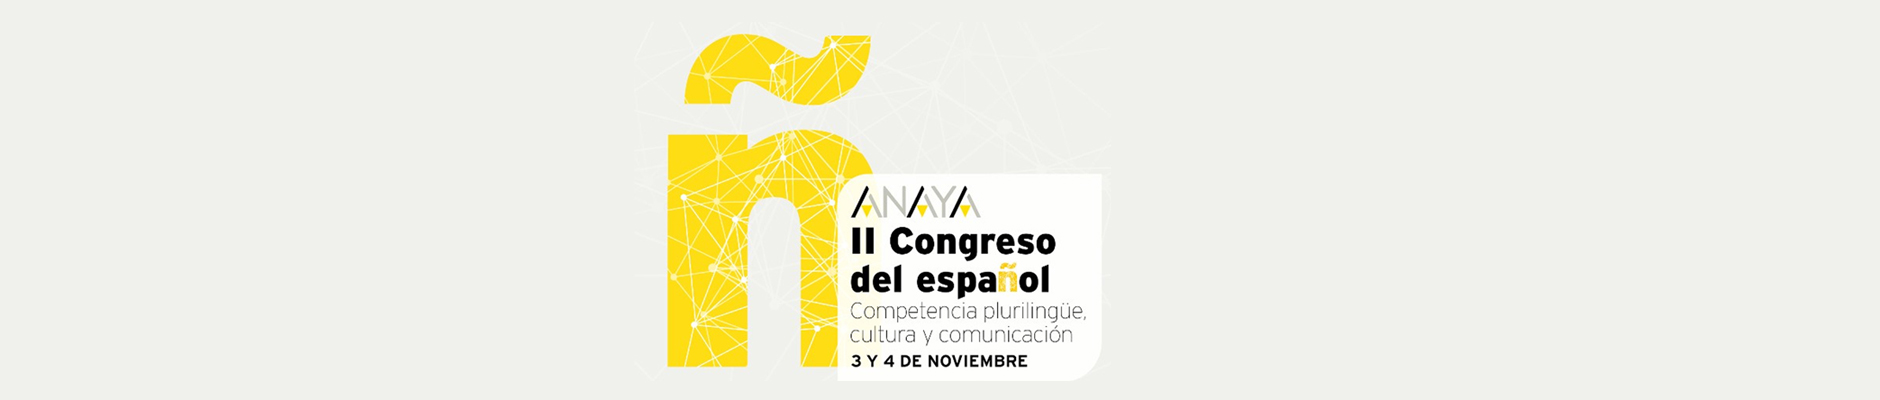 I Congreso Anaya del Español